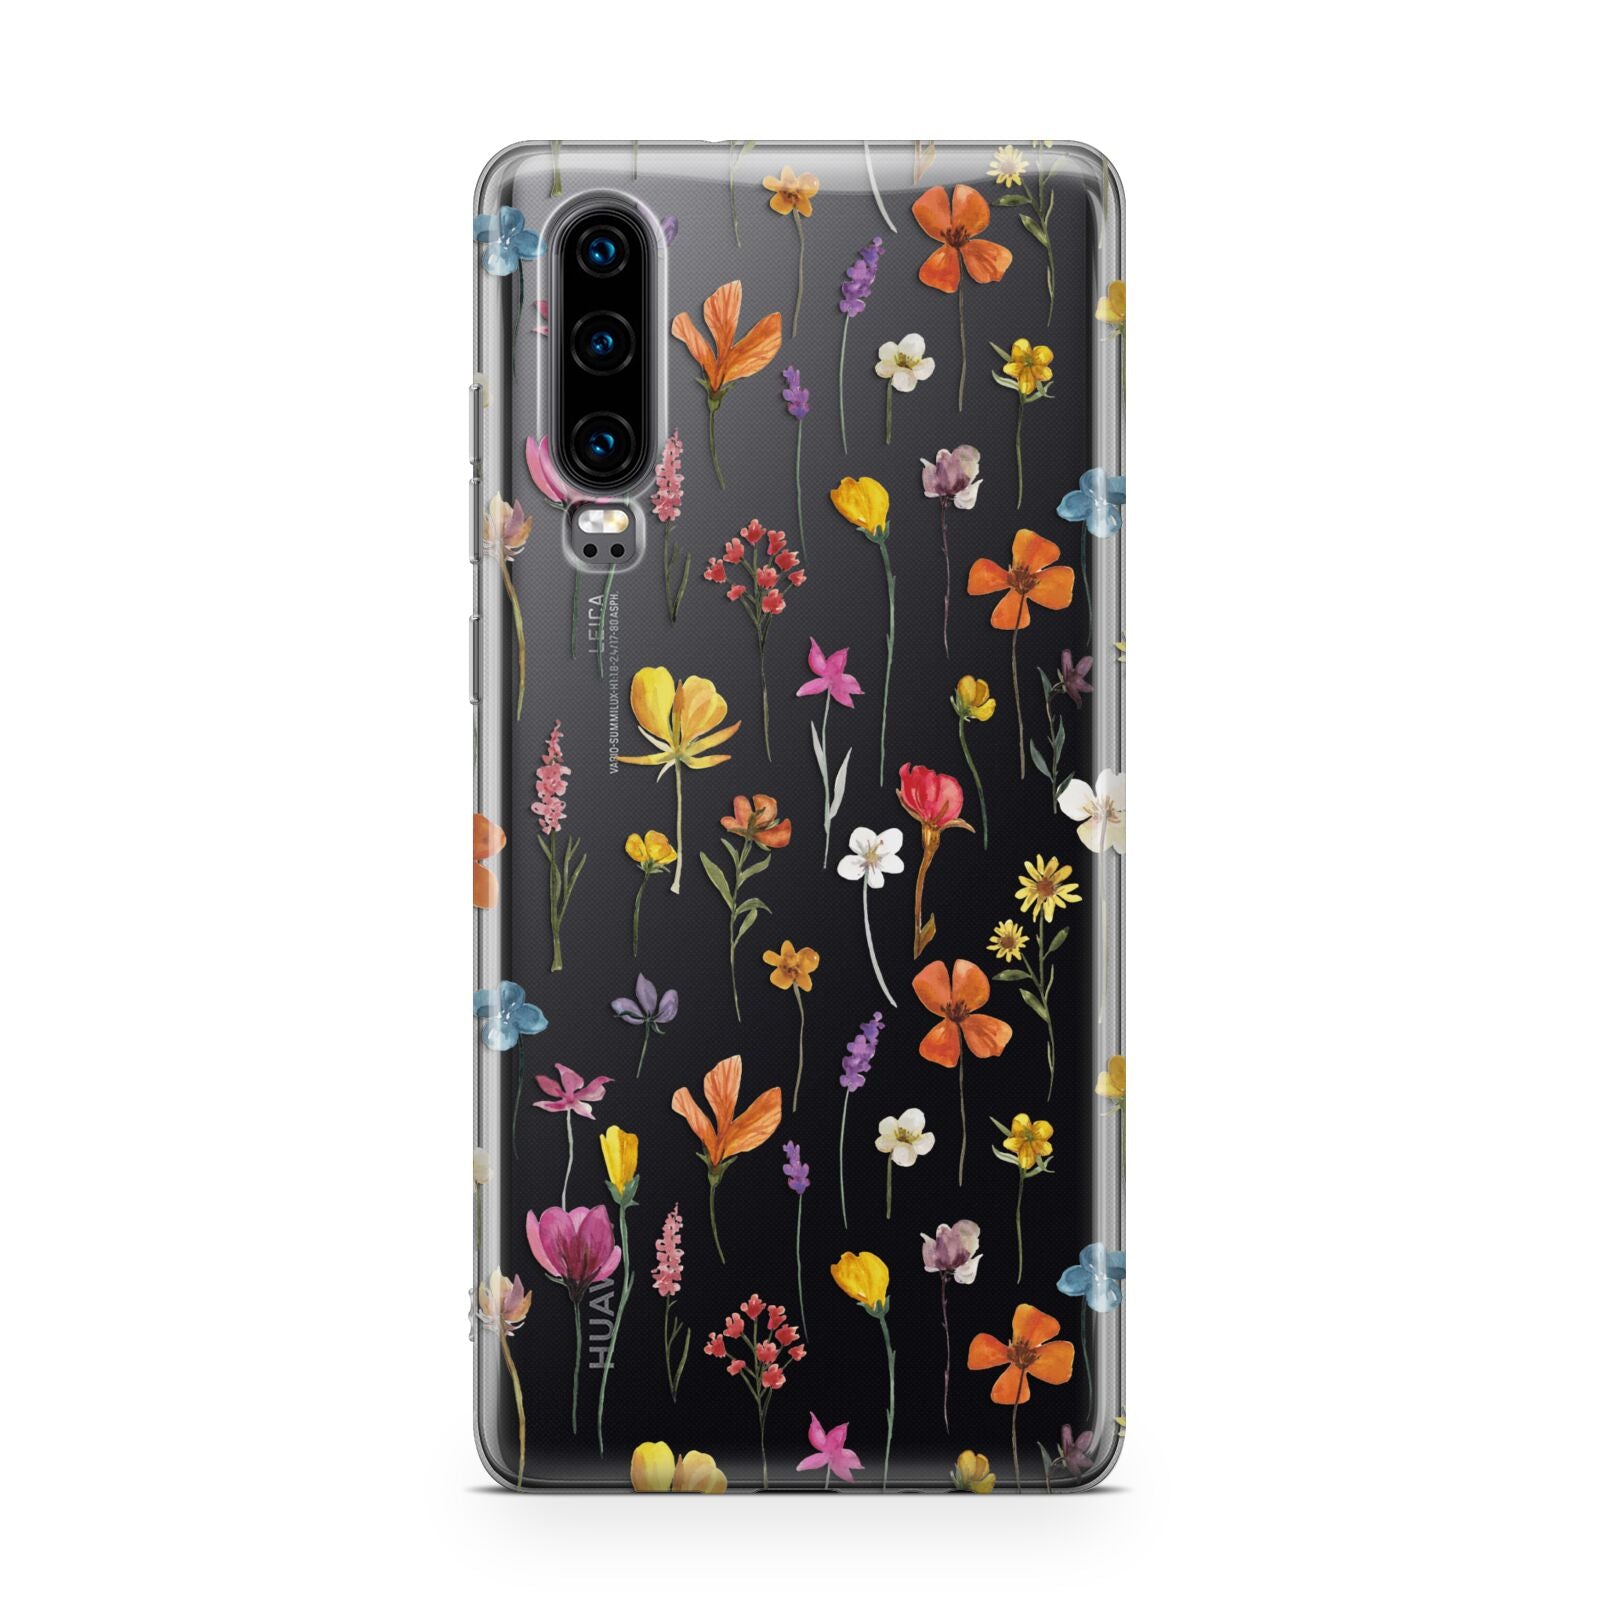 Botanical Floral Huawei P30 Phone Case